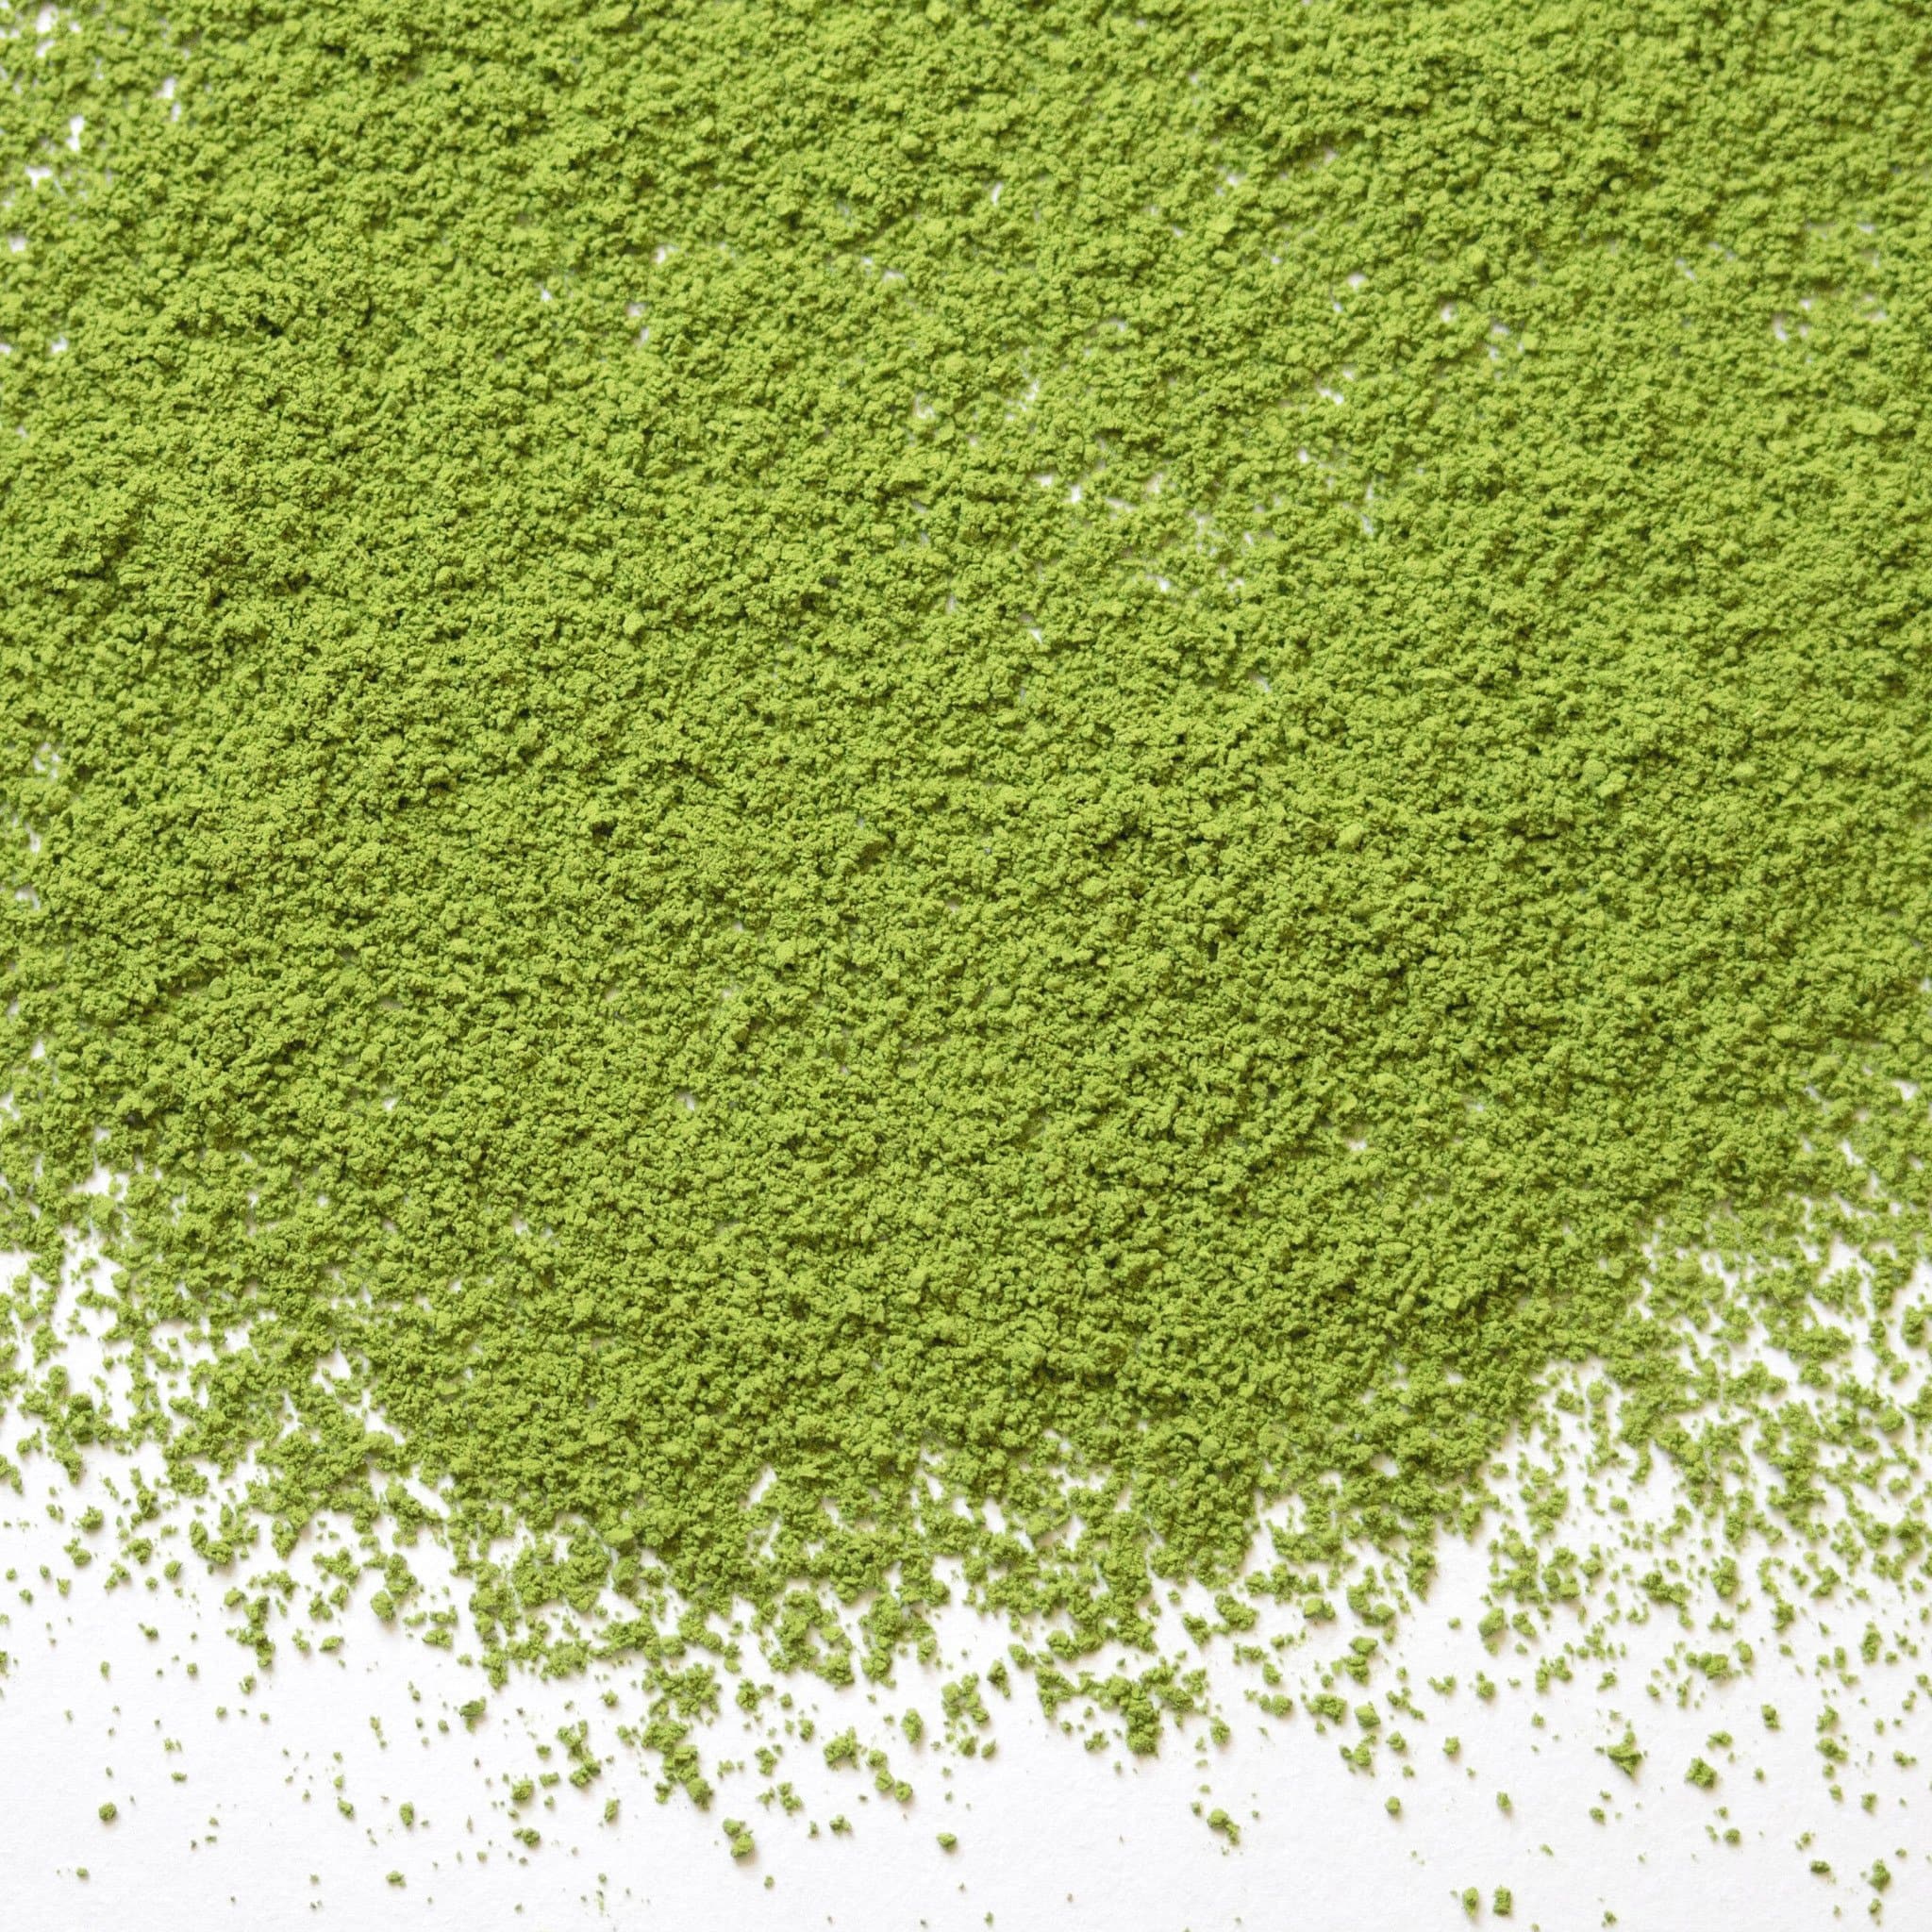 Matcha Chiyo-no-shiro green tea powder